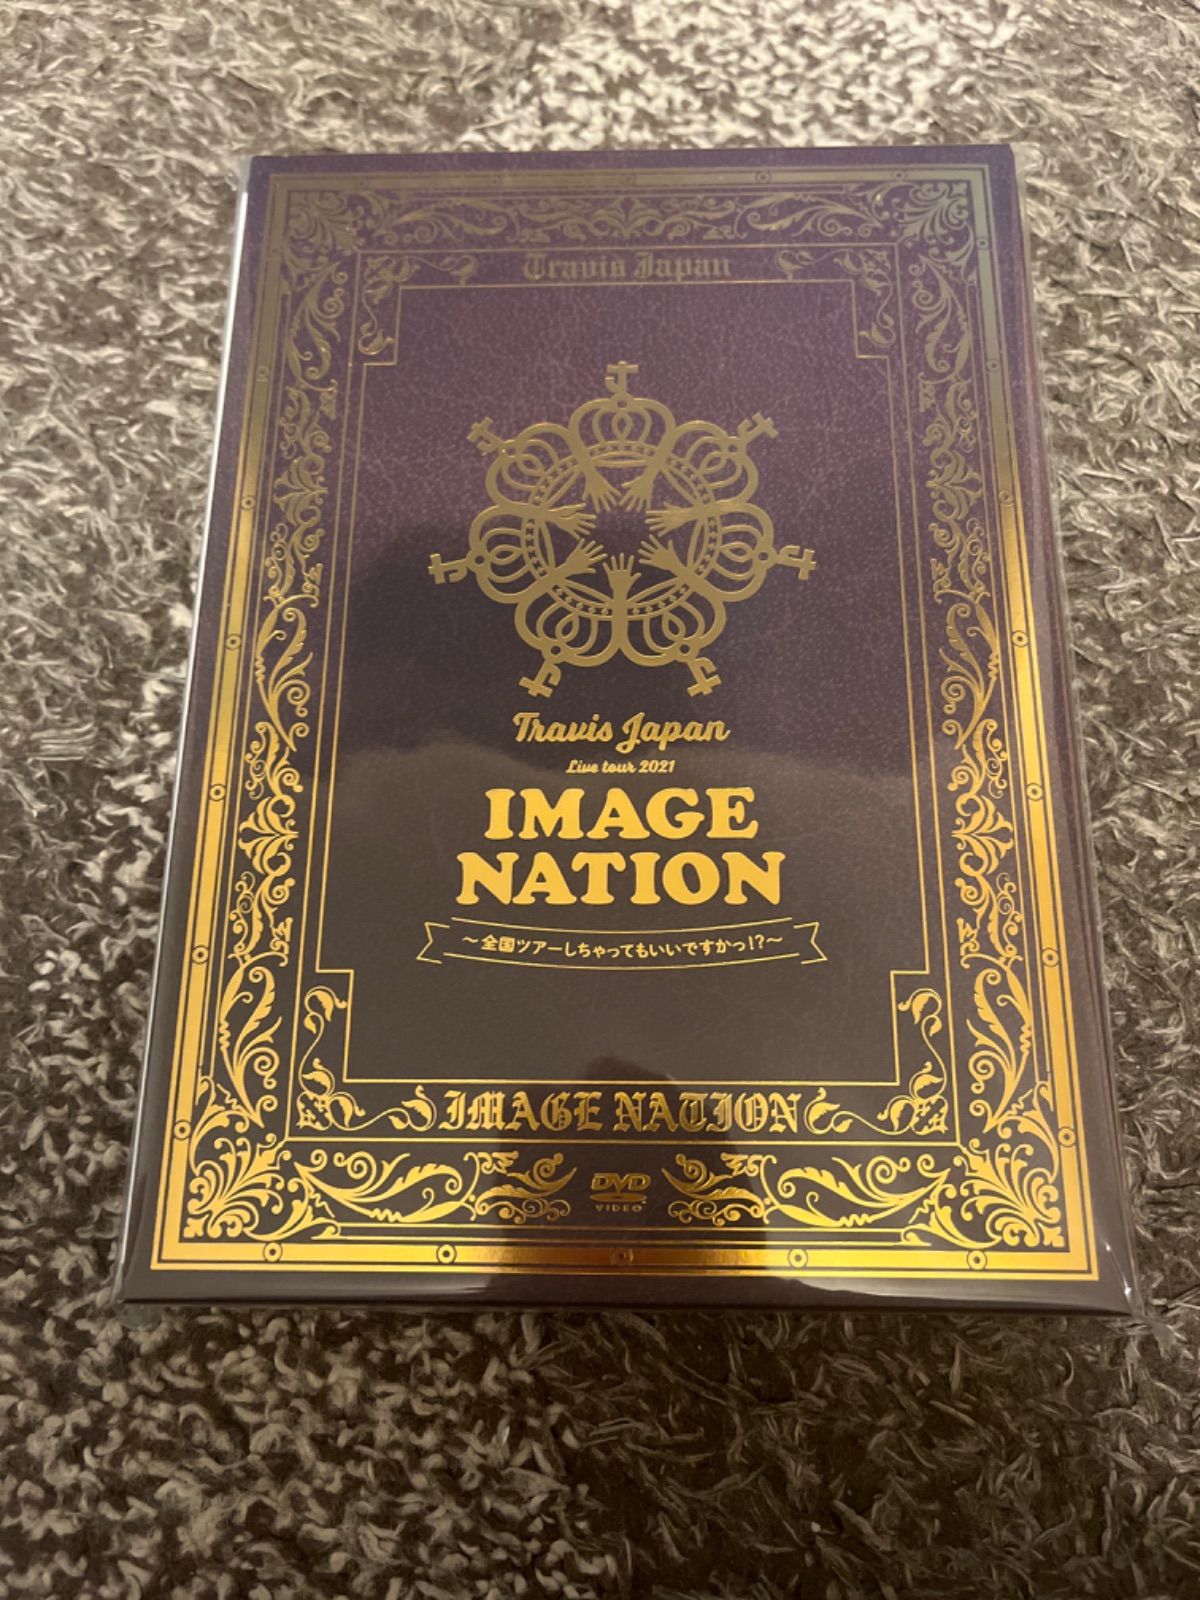 格安 TravisJapan IMAGE NATION DVD